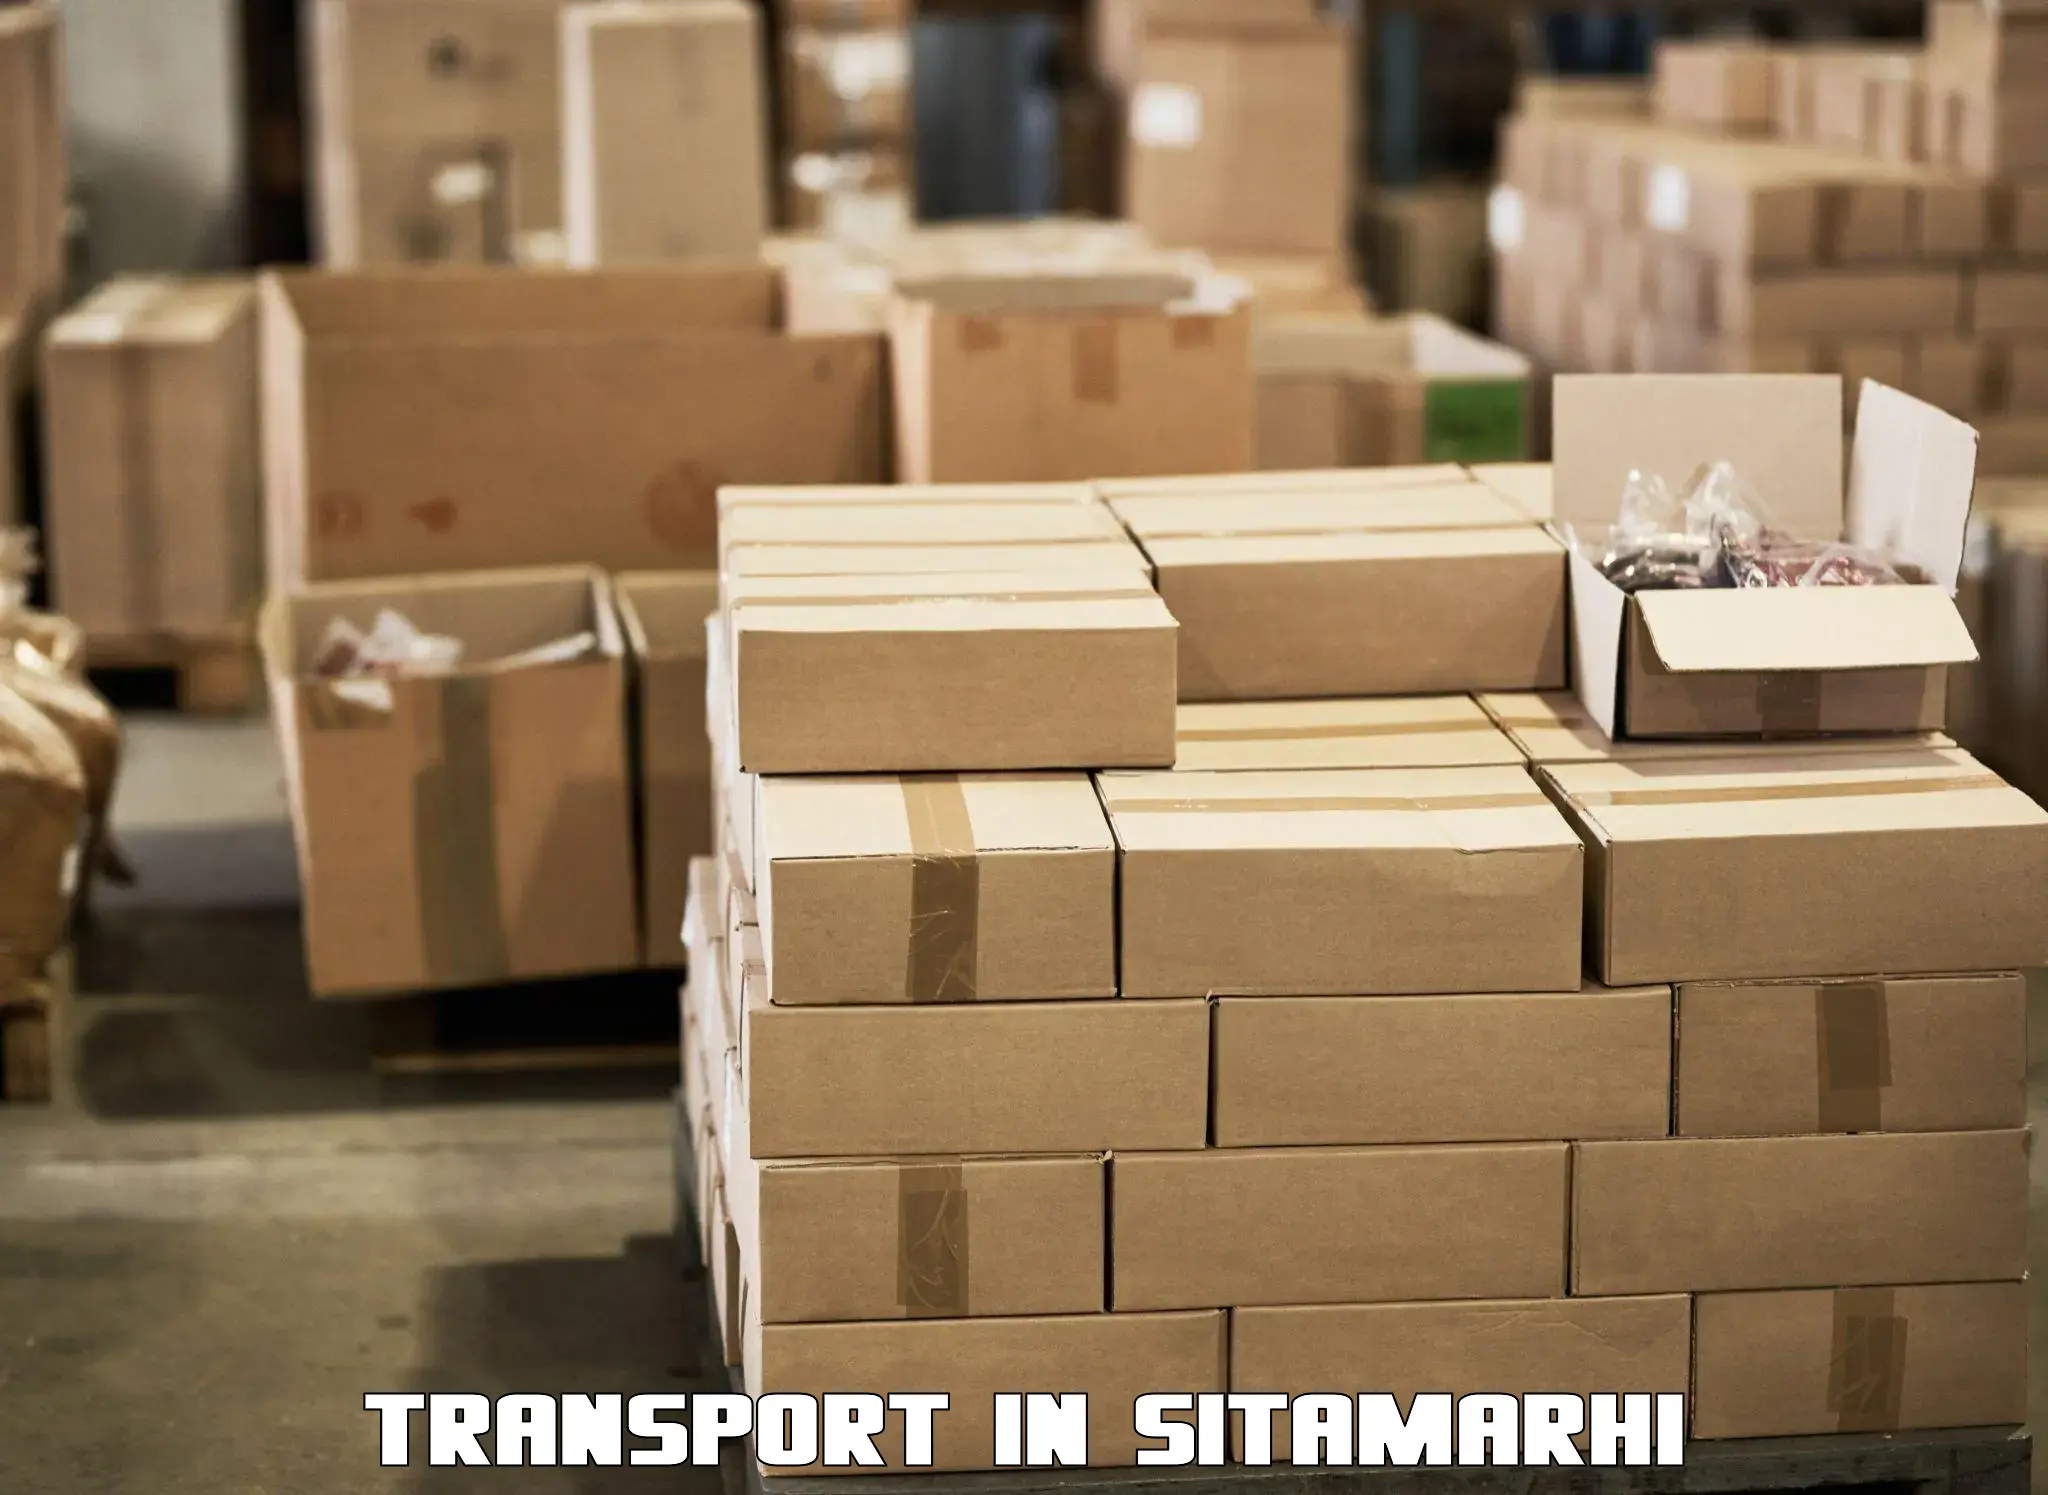 Online transport service in Sitamarhi